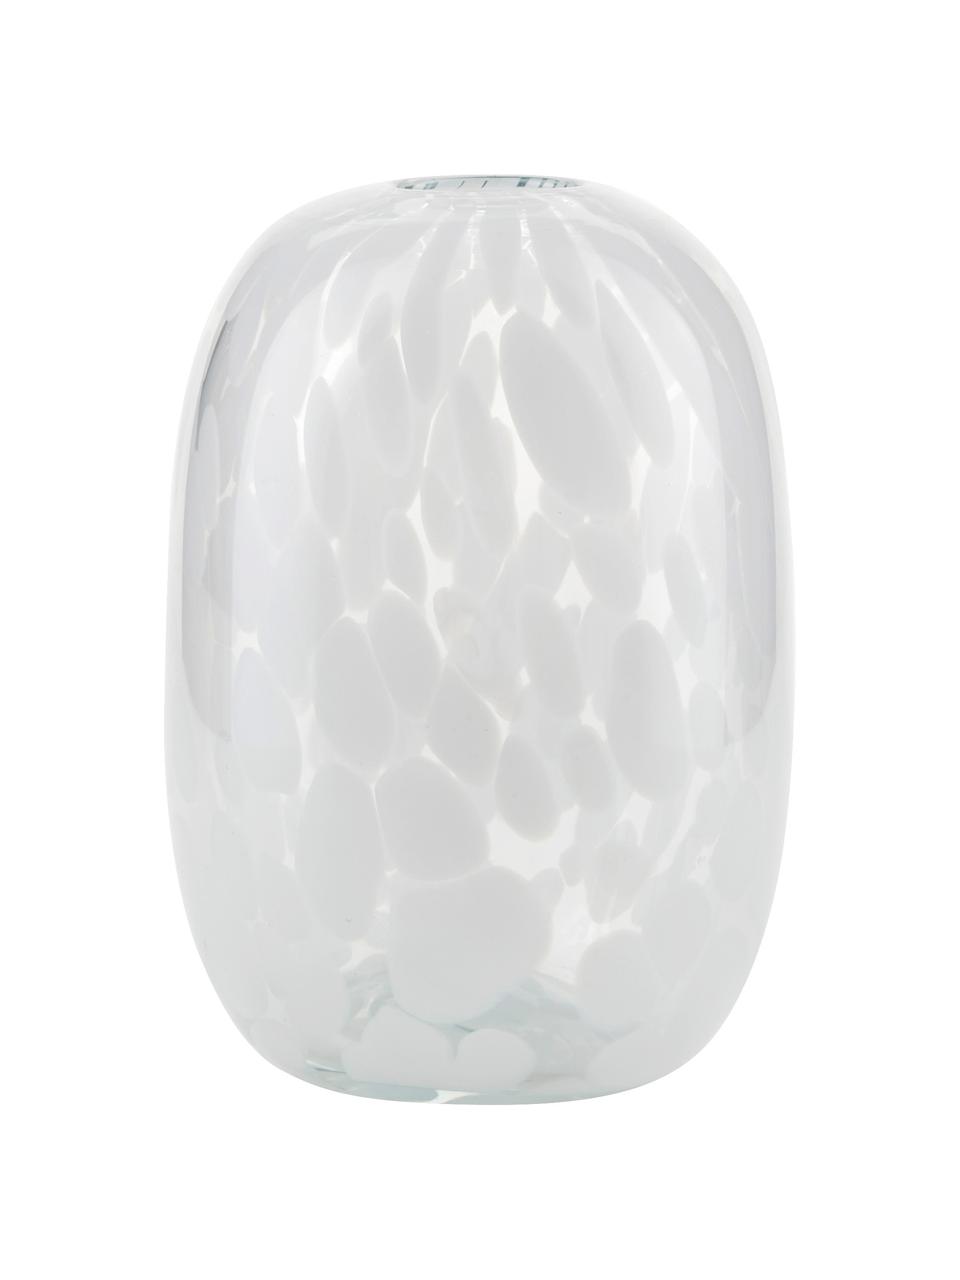 Design-Vase Dots mit Tupfen-Optik, Glas, Weiß, Ø 11 x H 17 cm